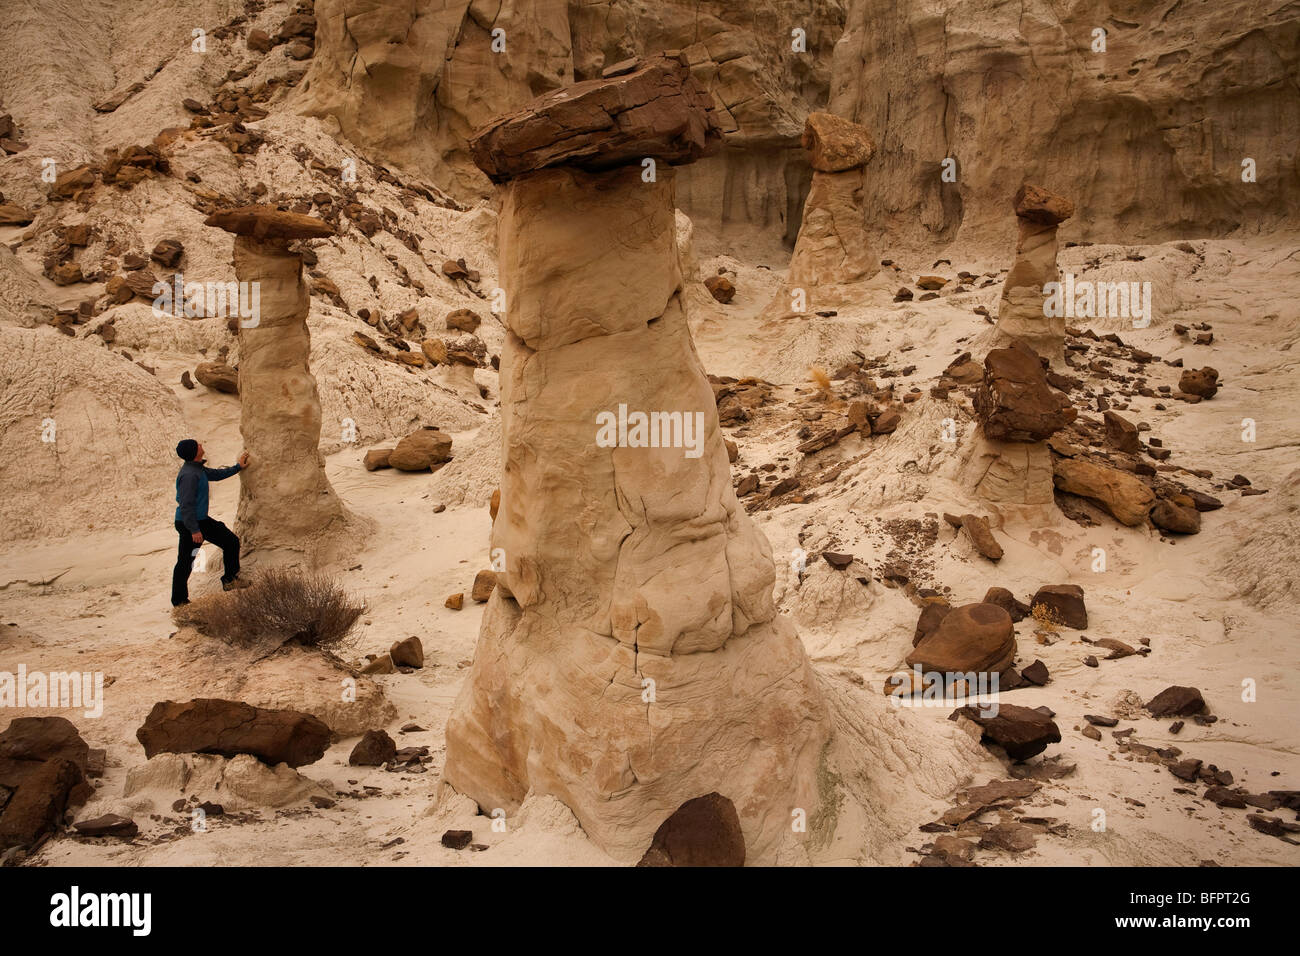 Geologische Formationen der Hoodoos im Rimrock Hoodoo-Becken auf öffentlichen Flächen in Utah, USA, Wanderer, Modell Bildrechte auf Datei Stockfoto